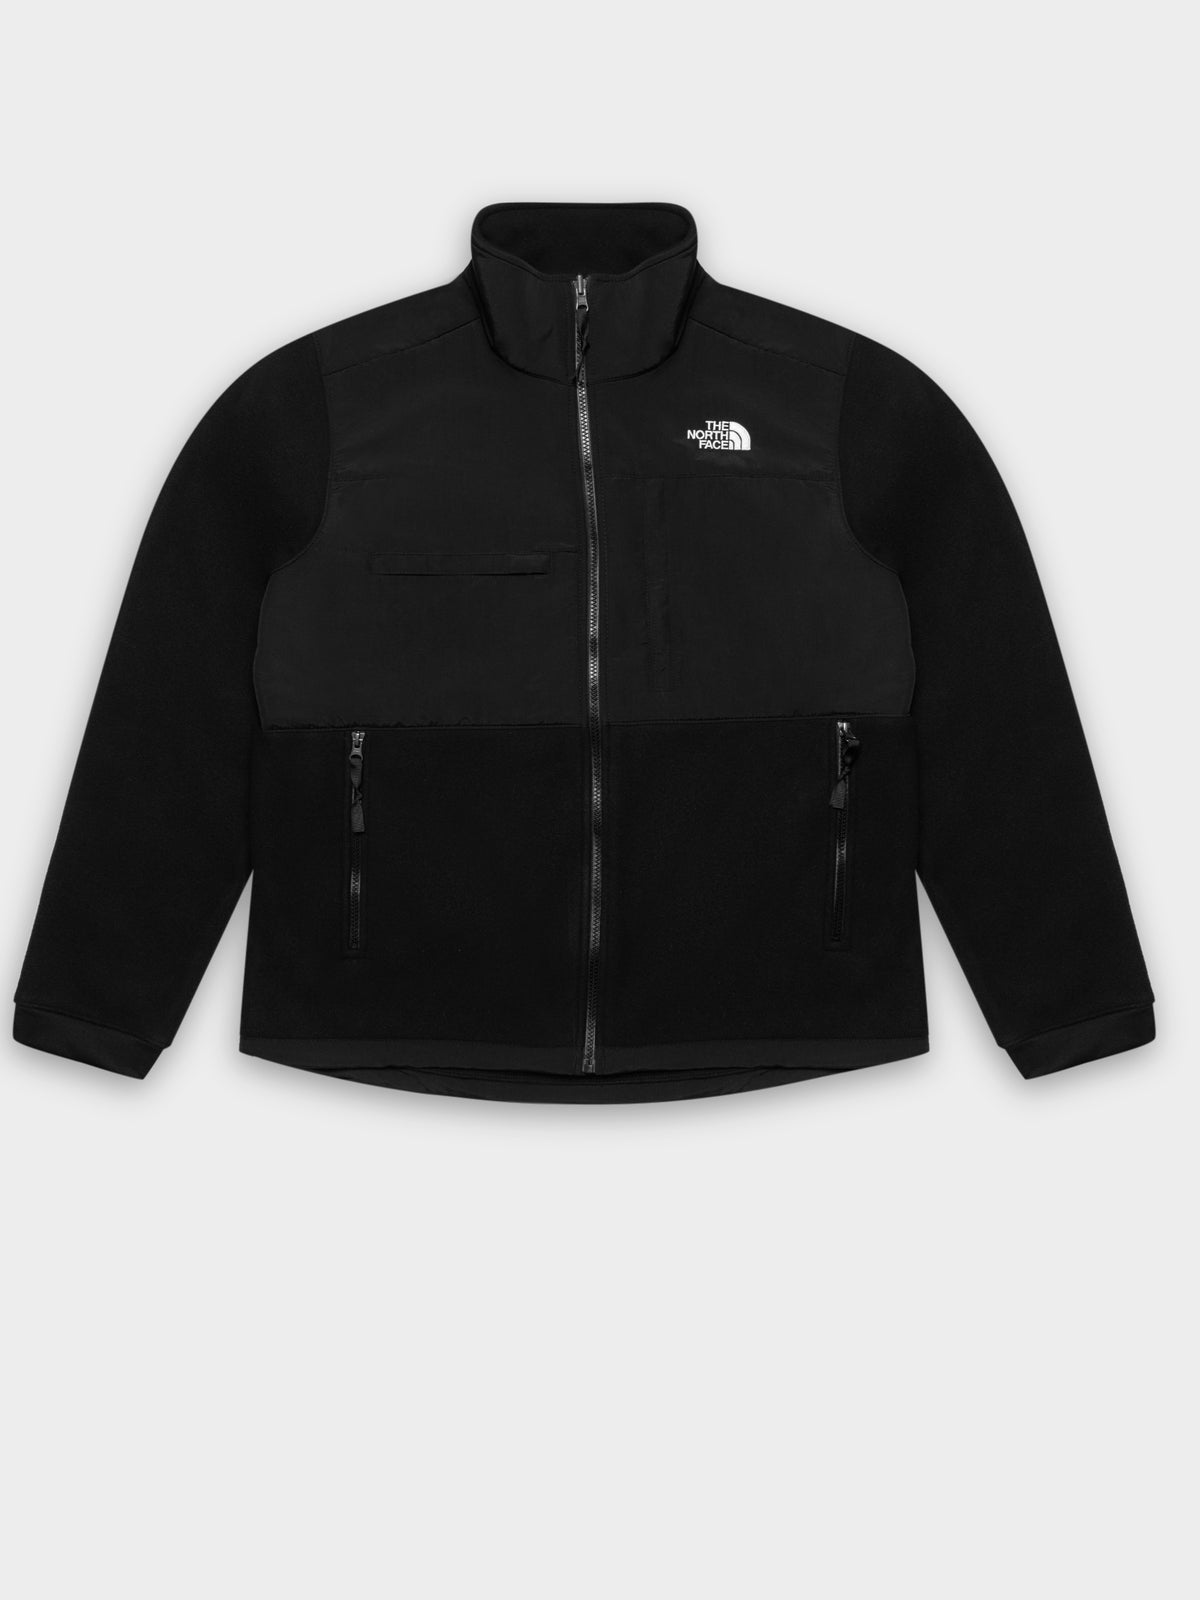 Denali 2 Fleece Jacket in Black